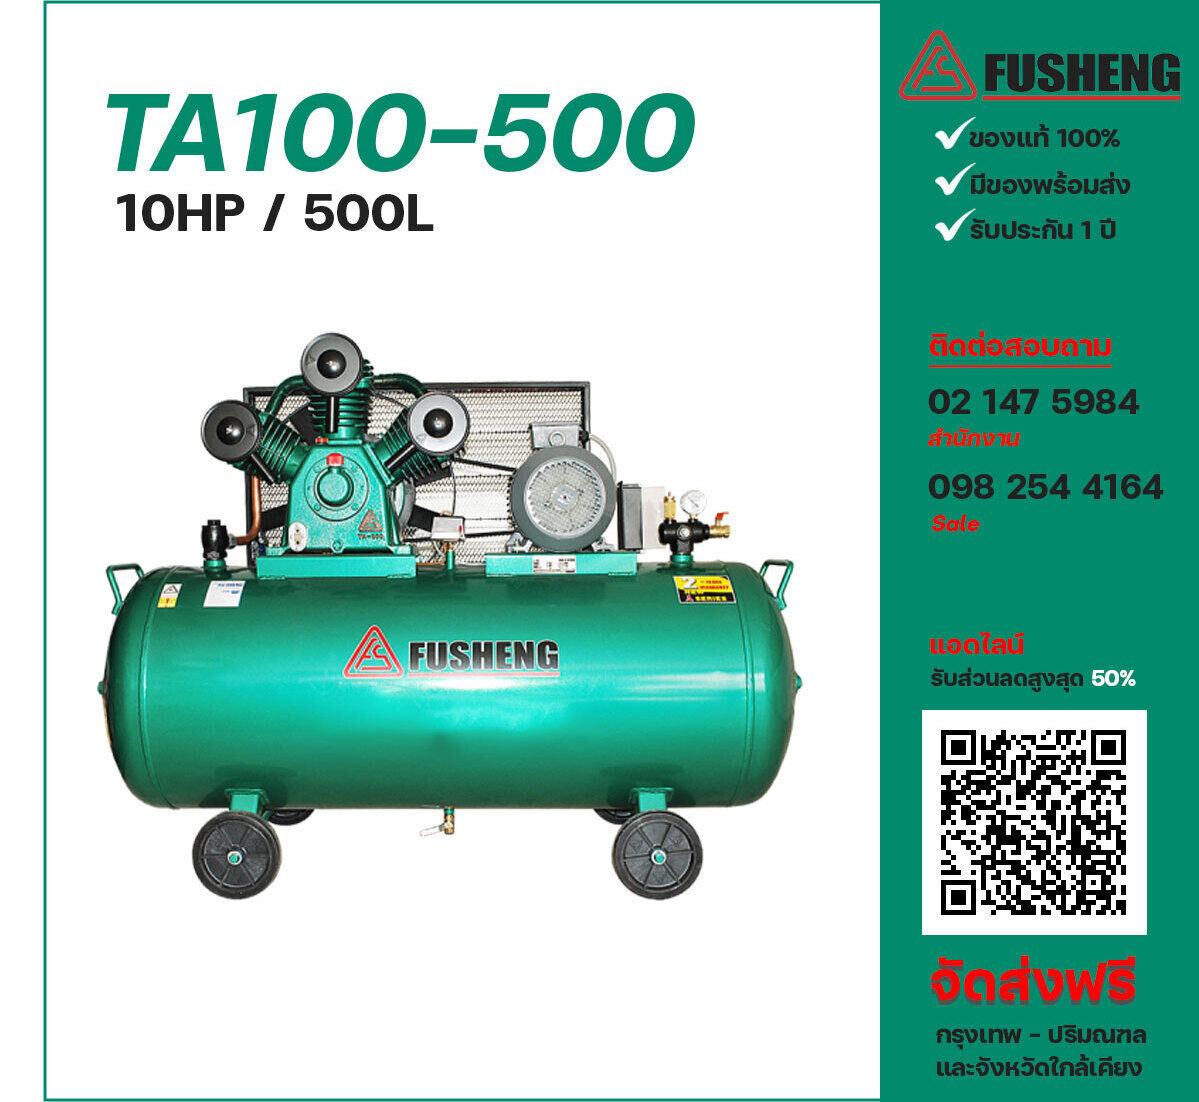 ปั๊มลมฟูเช็ง FUSHENG TA100-500 380V ปั๊มลมลูกสูบ ขนาด 3 สูบ 10 แรงม้า 500 ลิตร FUSHENG พร้อมมอเตอร์ ไฟ 380V ส่งฟรี กรุงเทพฯ-ปริมณฑล รับประกัน 1 ปี